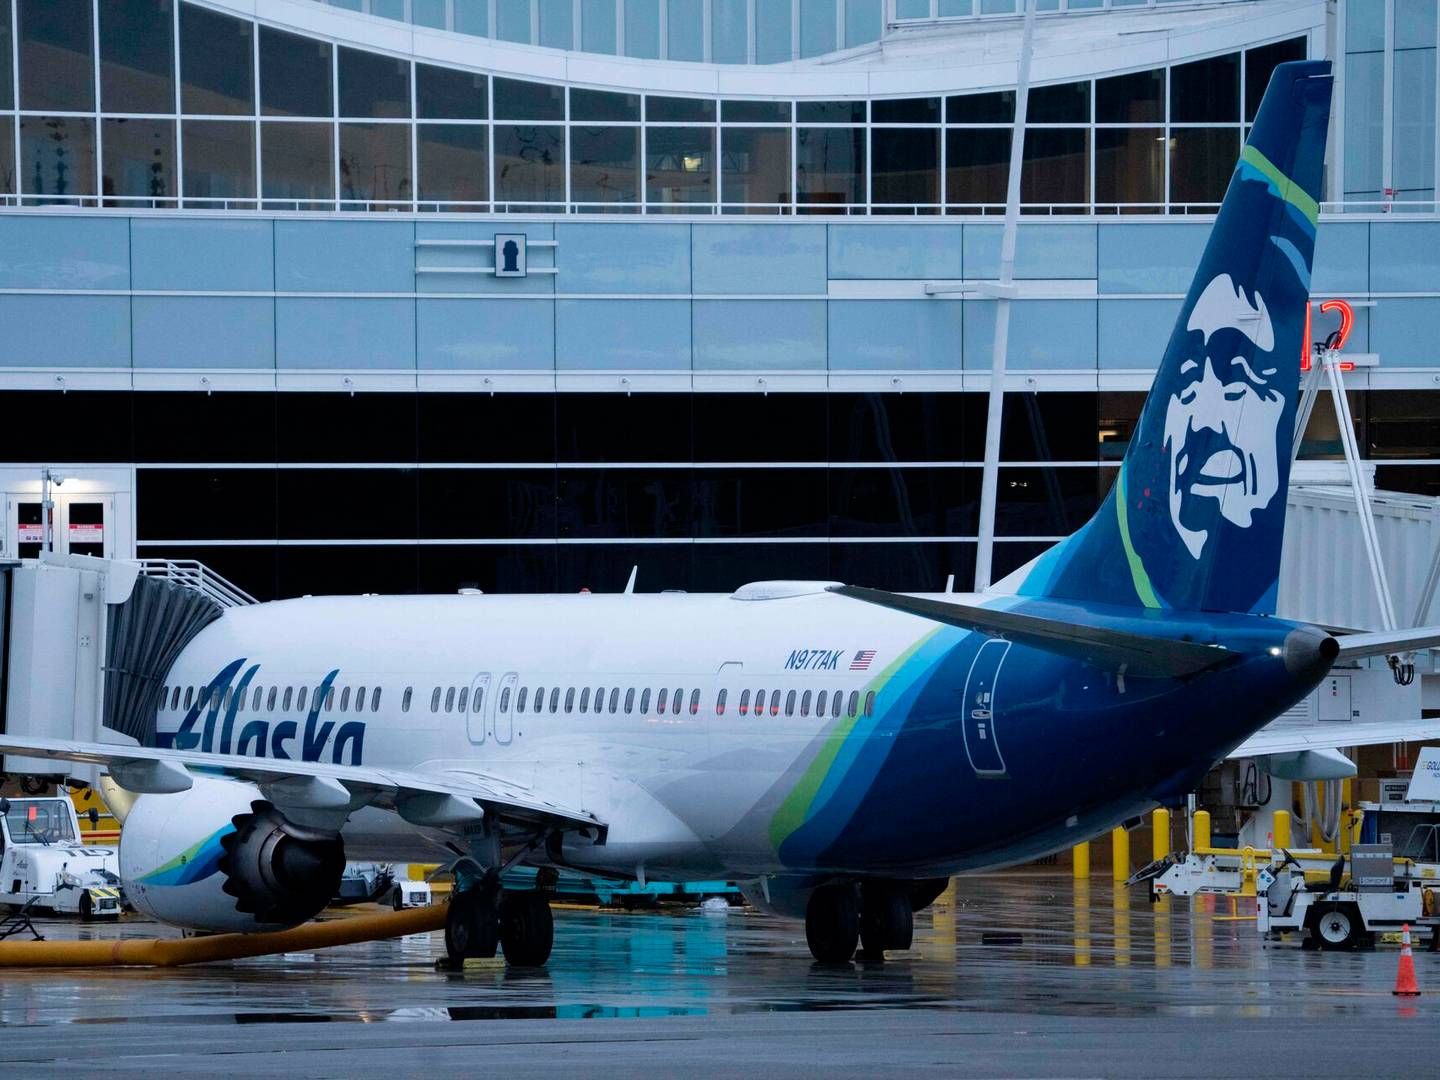 Der var 171 personer ombord på det Boeing-fly fløjet af Alaska Airlines , der mistede et vindue, som blev blæst ud i luften. Arkivfoto: Stephen Brashear/AFP/Ritzau Scanpix